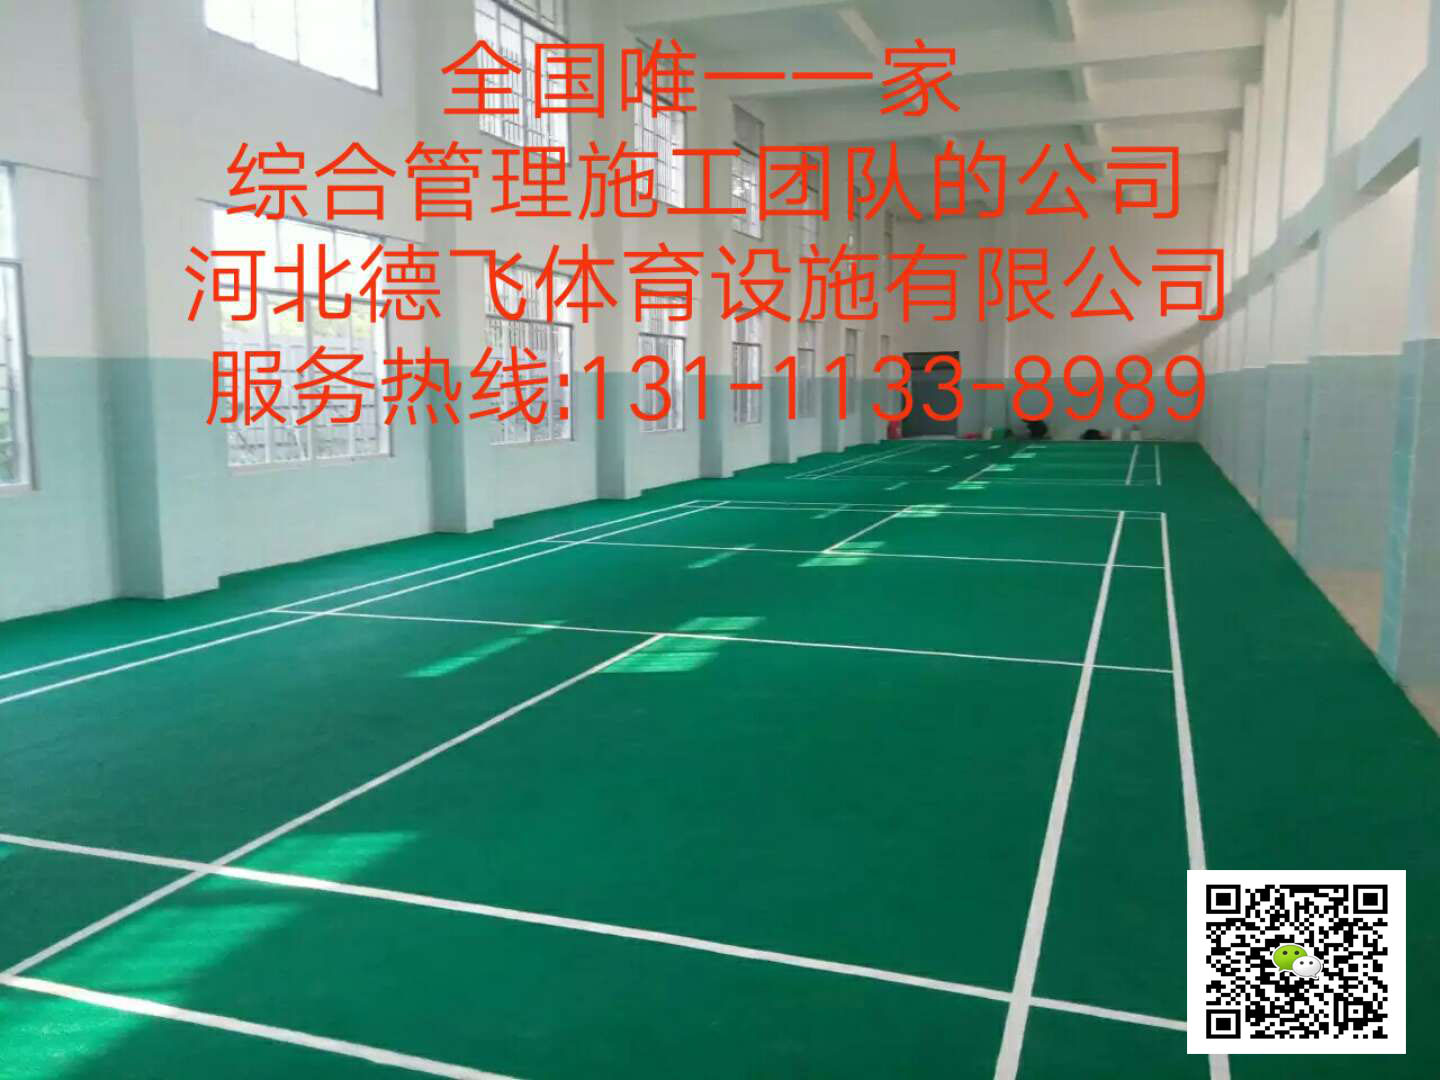 德阳足球场《上海新团标》设计《有限公司欢迎您》